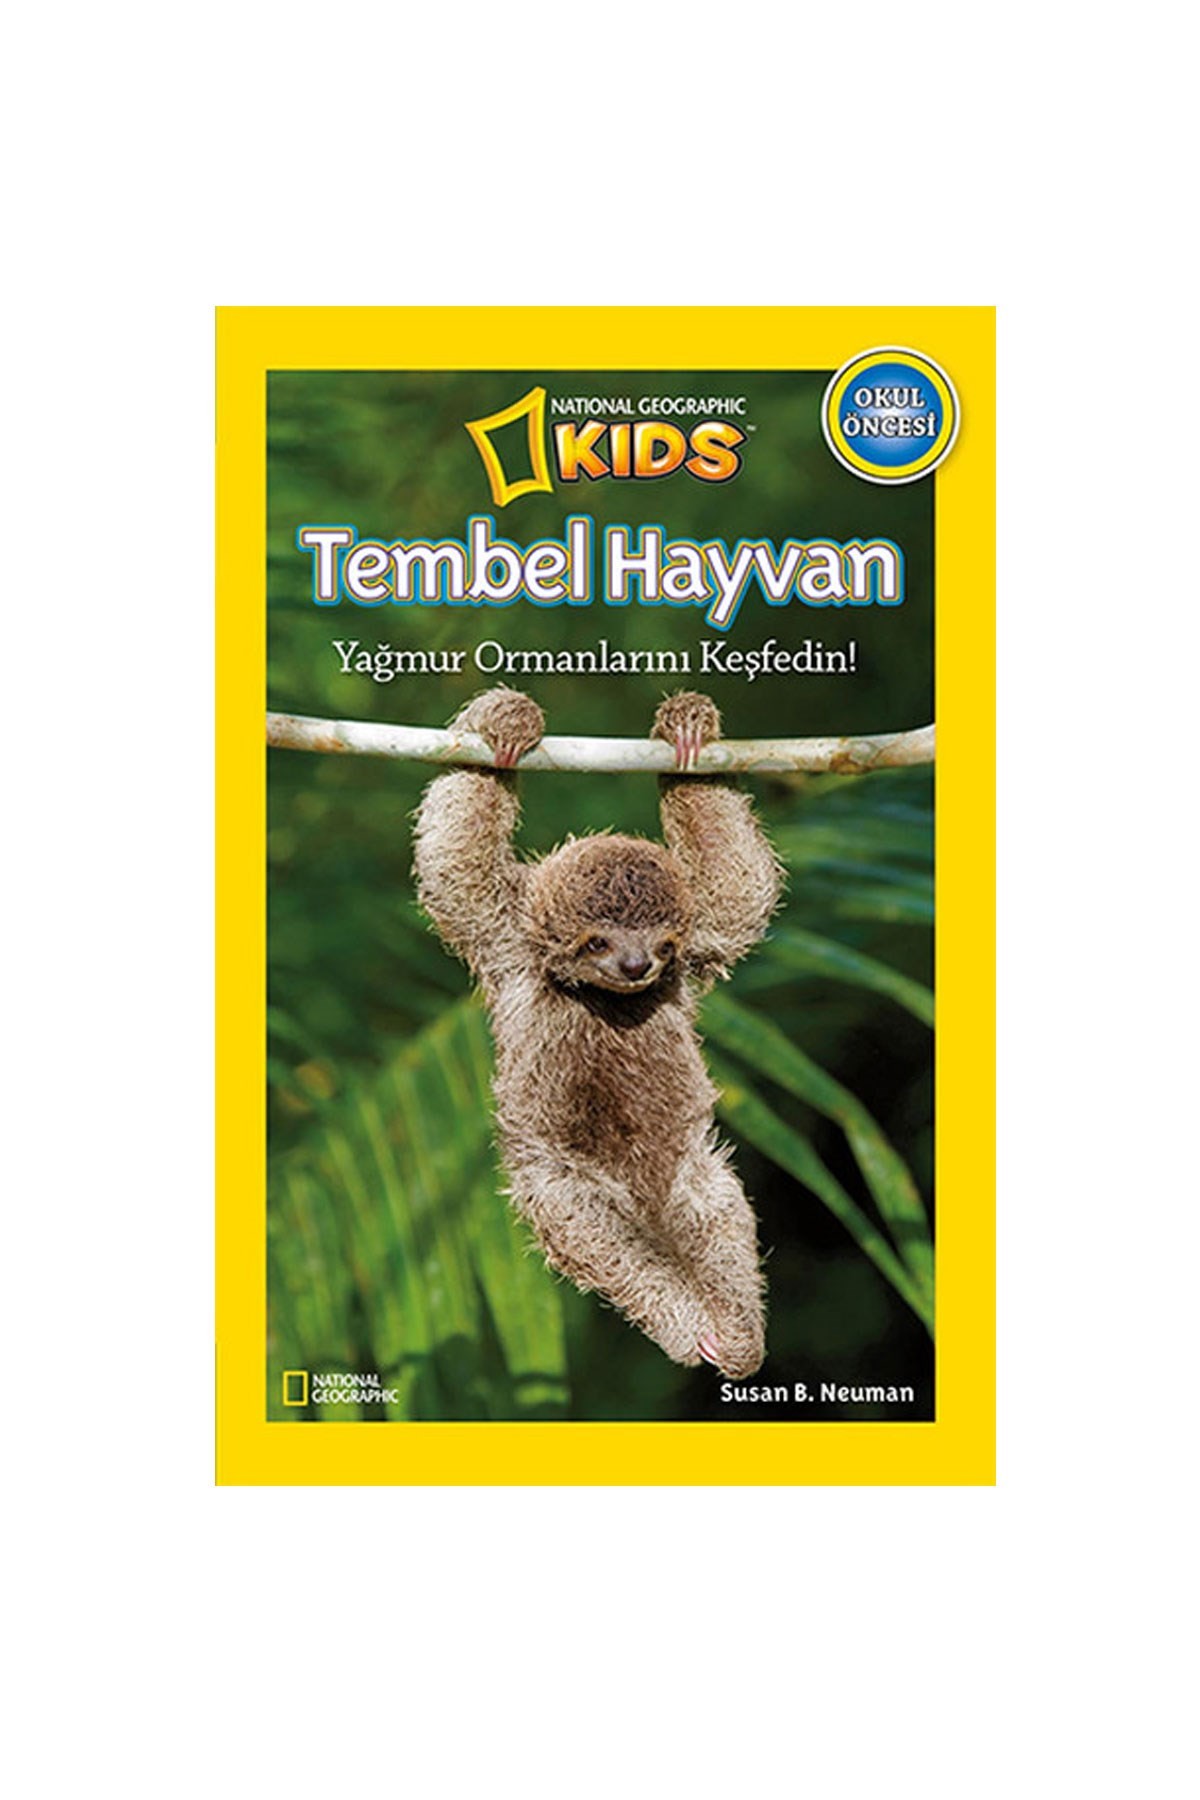 National Geographic Kids Tembel Hayvan